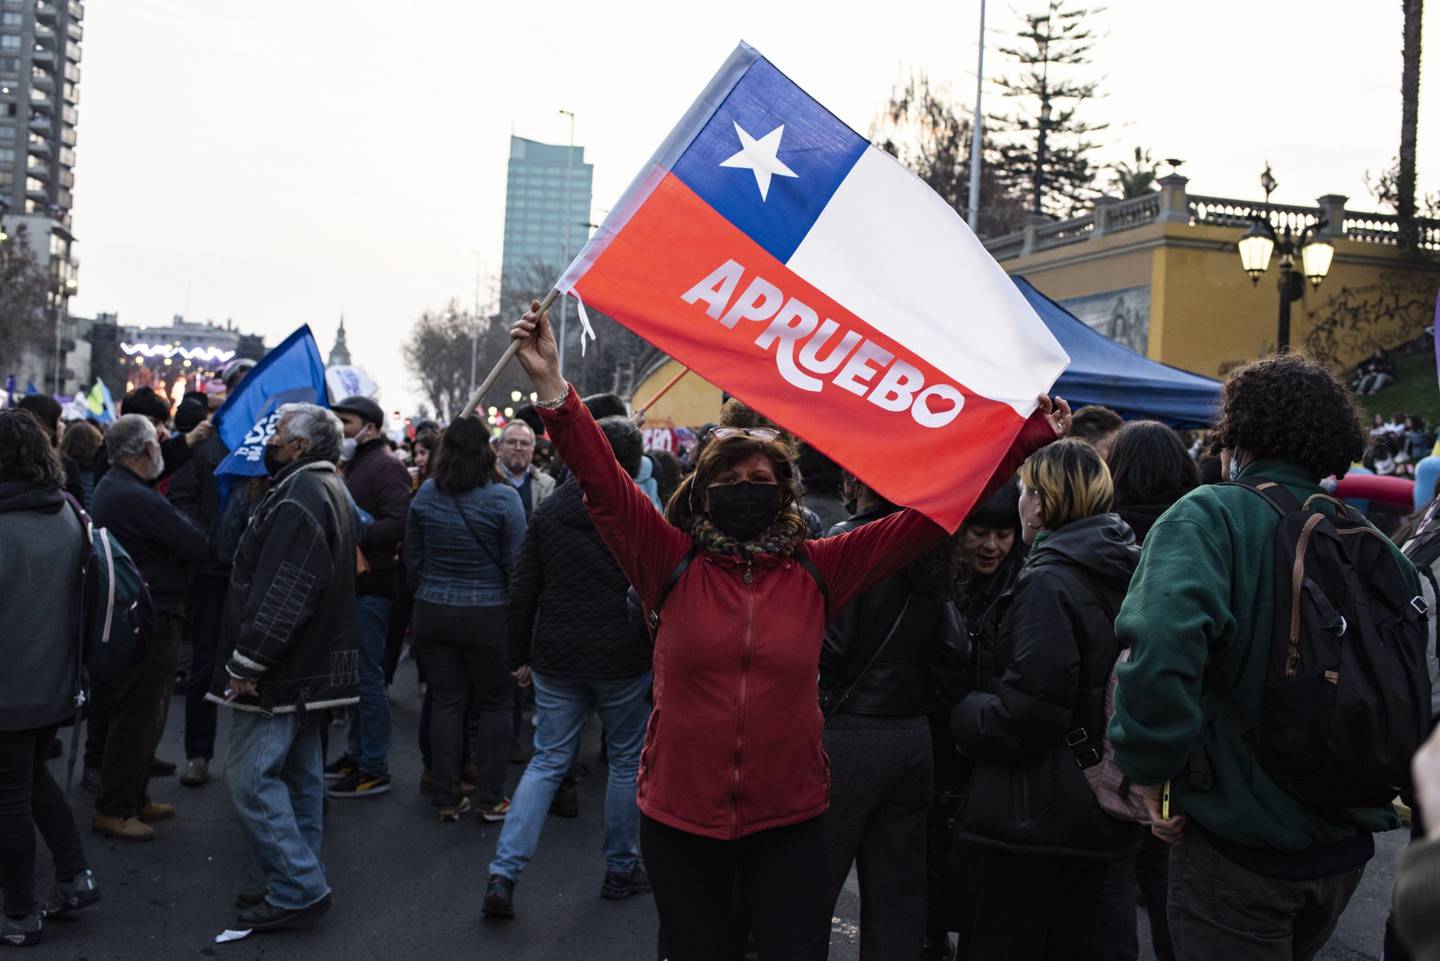 Manifestantes durante un mitin "Apruebo" antes del referéndum constitucional de Chile en la avenida Alameda de Santiago, Chile, el jueves 1 de septiembre de 2022. Los chilenos votarán el 4 de septiembre sobre una nueva constitución propuesta para reemplazar una impuesta por la dictadura militar que gobernó de 1973 a 1990.